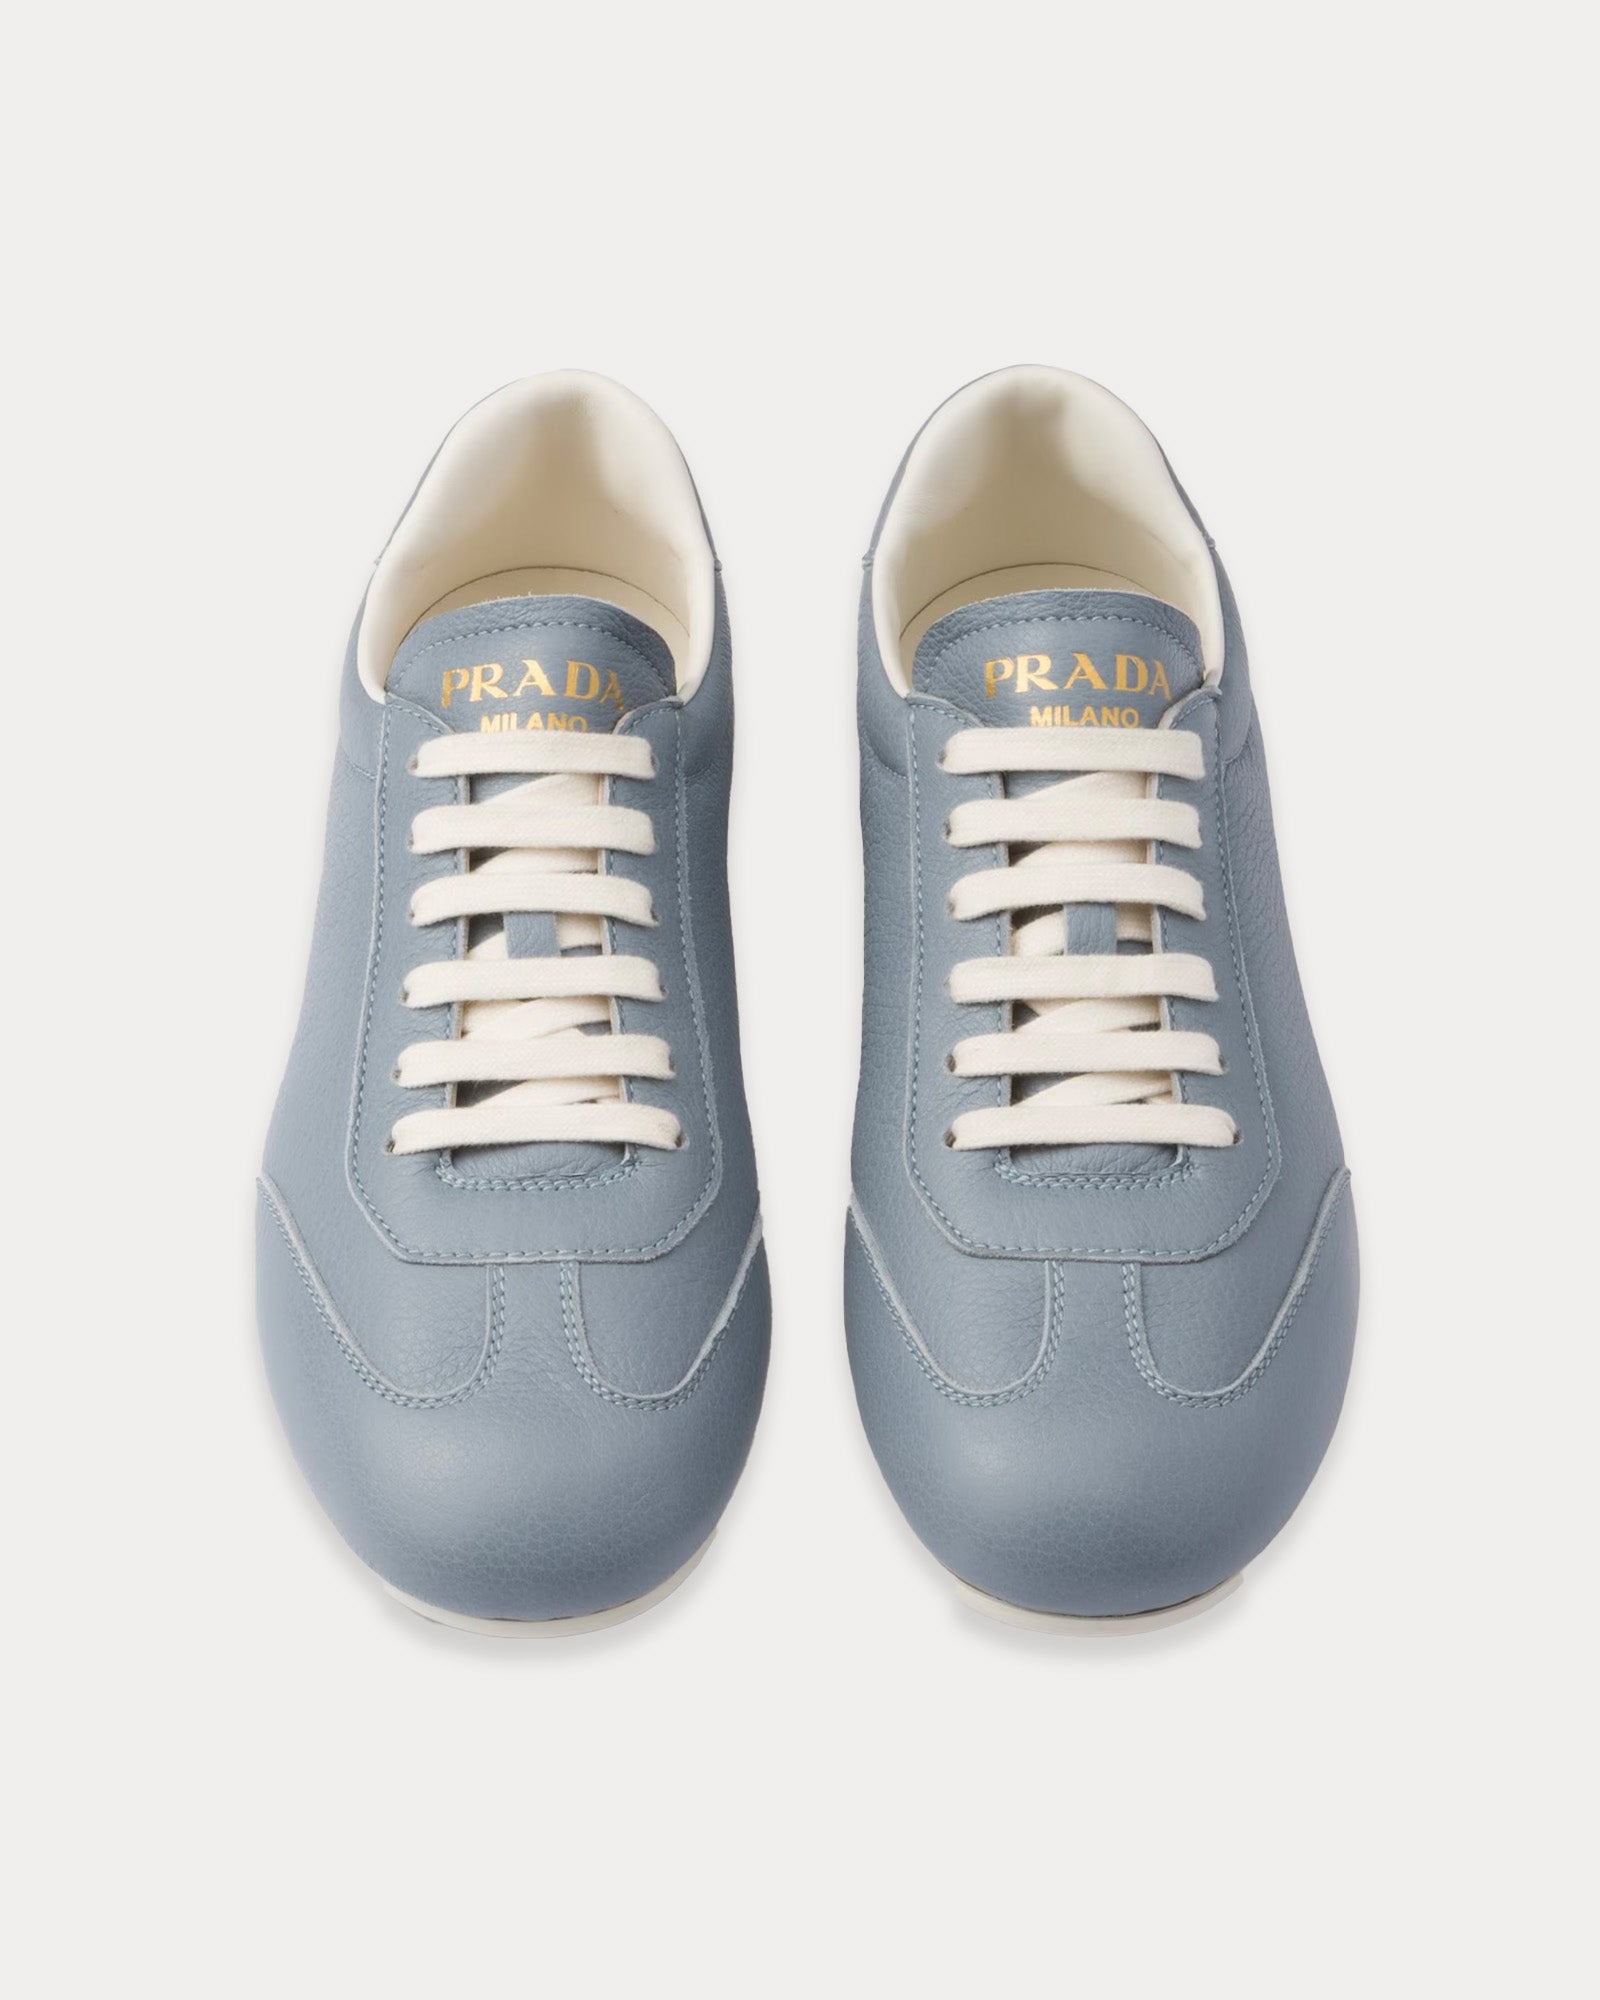 Prada - Deer Leather Astral Blue Low Top Sneakers